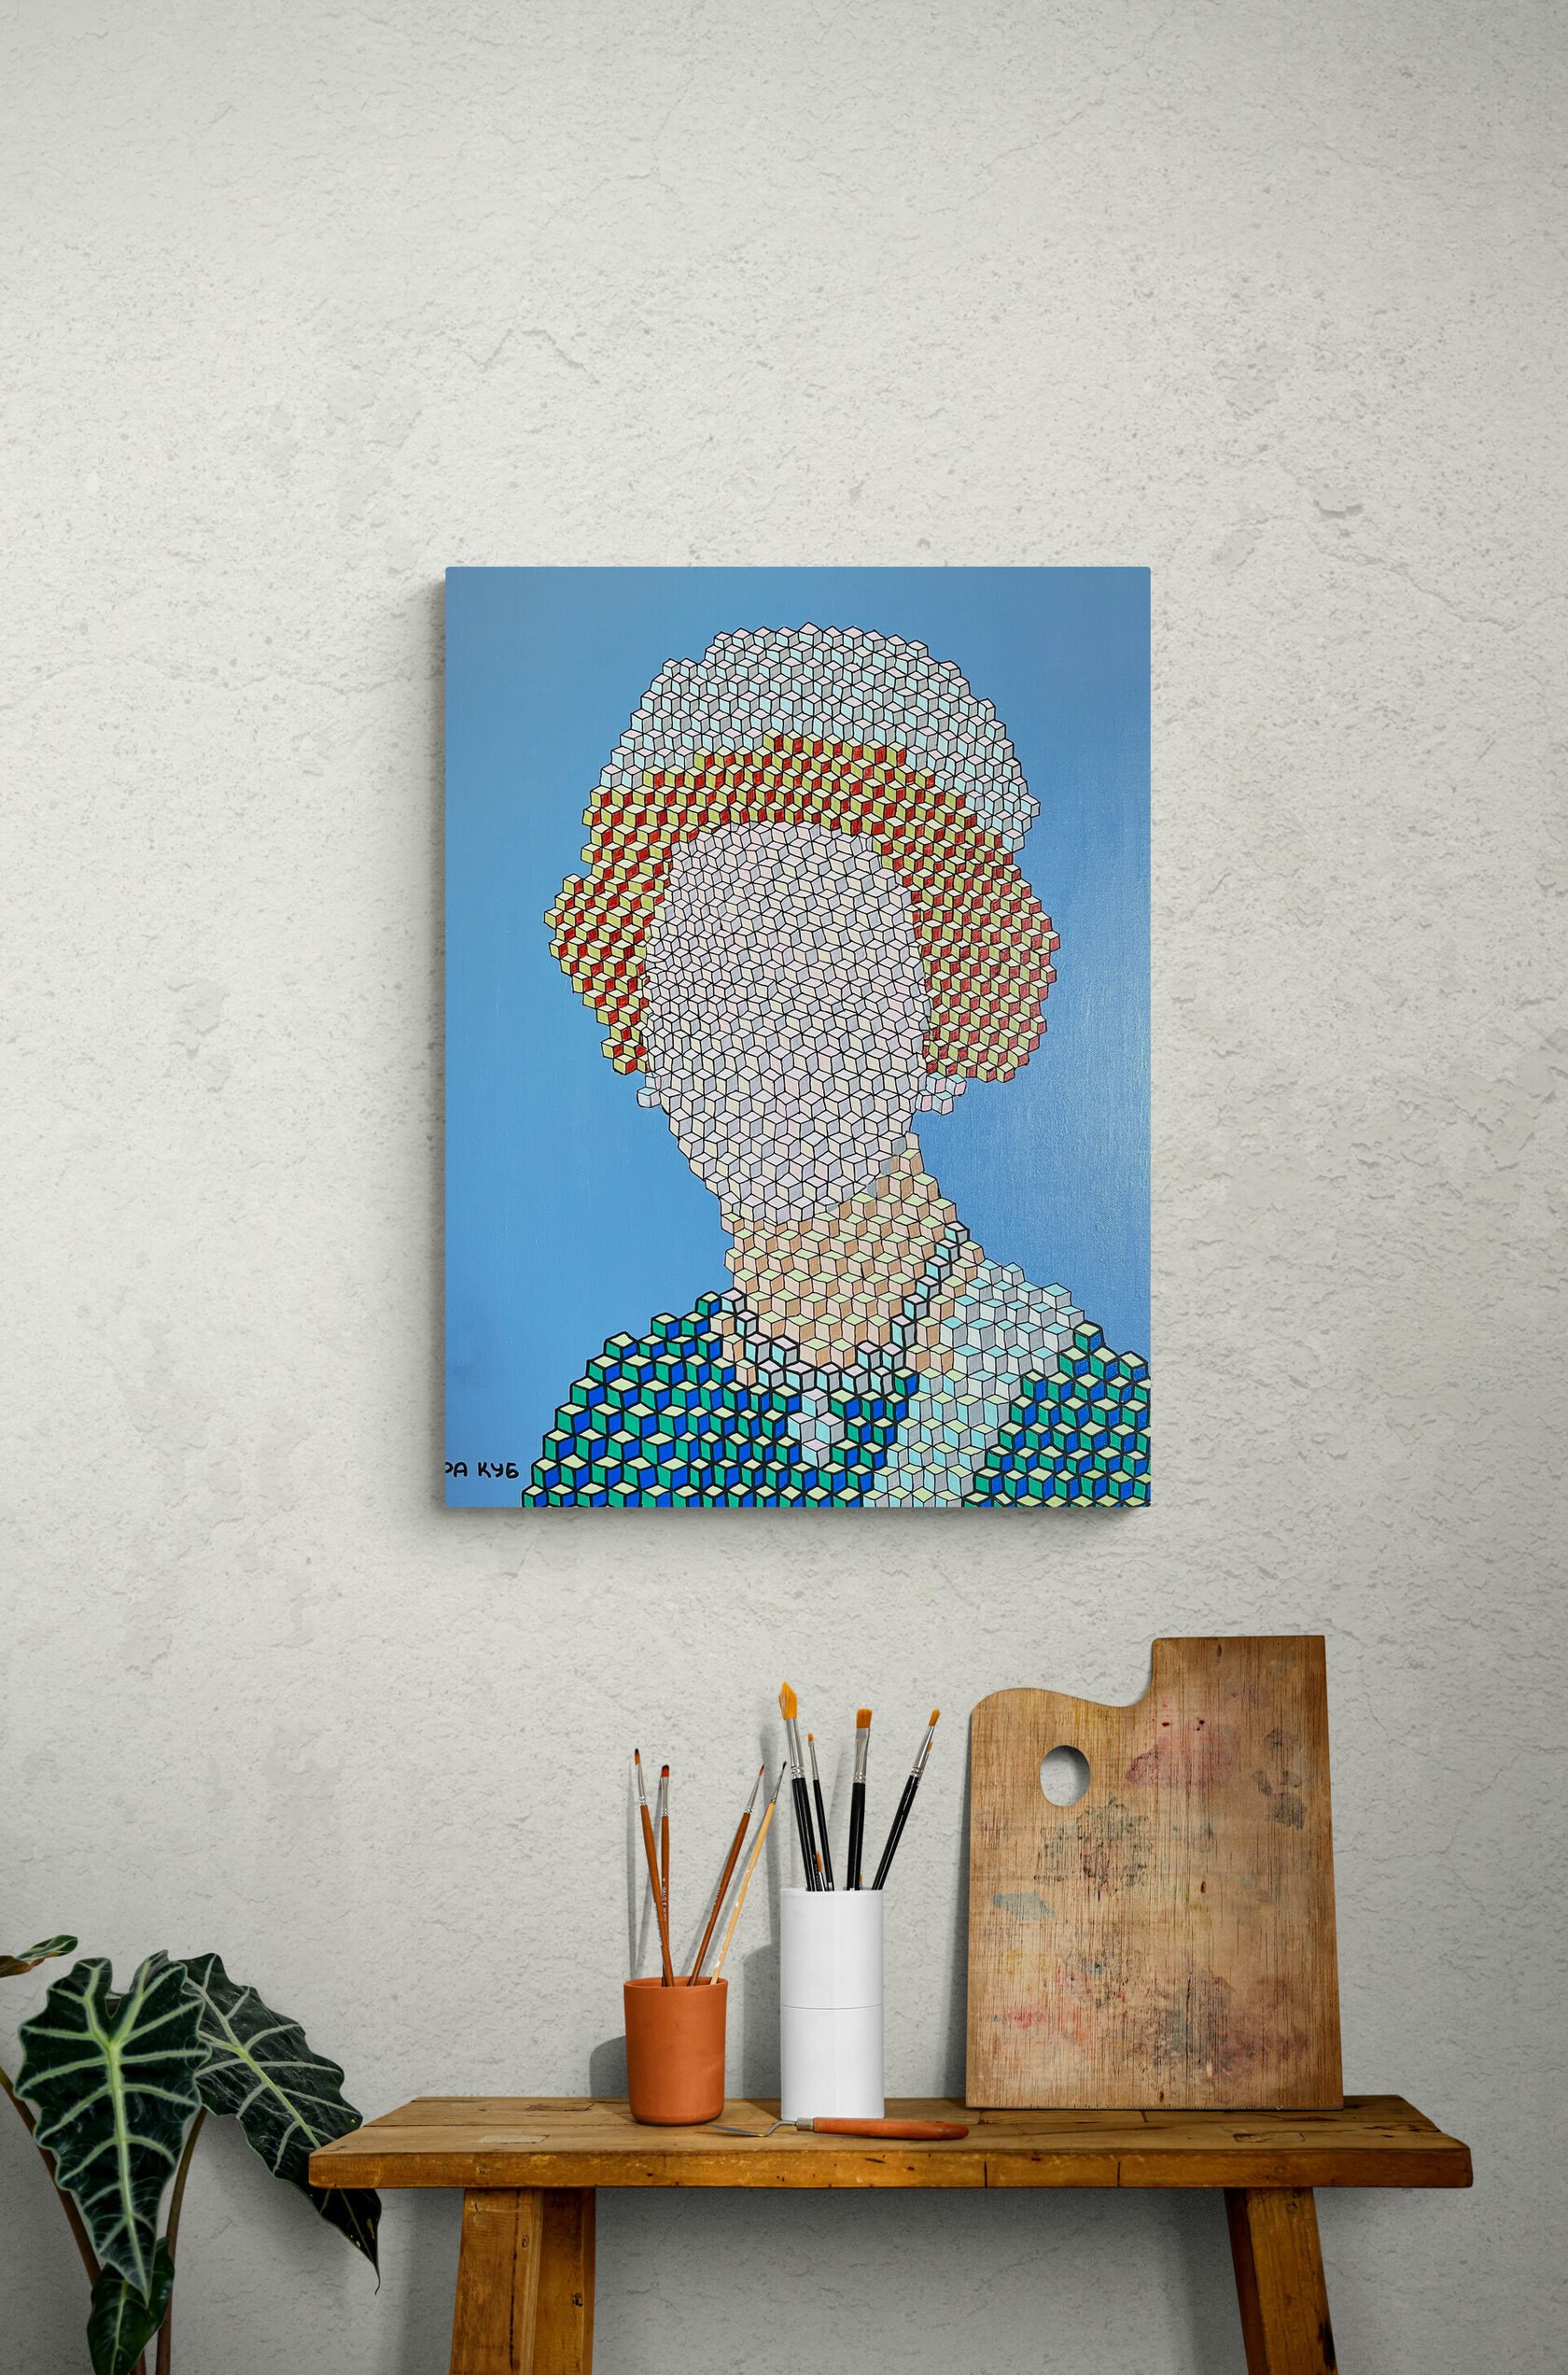 Ира Куб портрет Елизаветы II на голубом фоне в интерьере